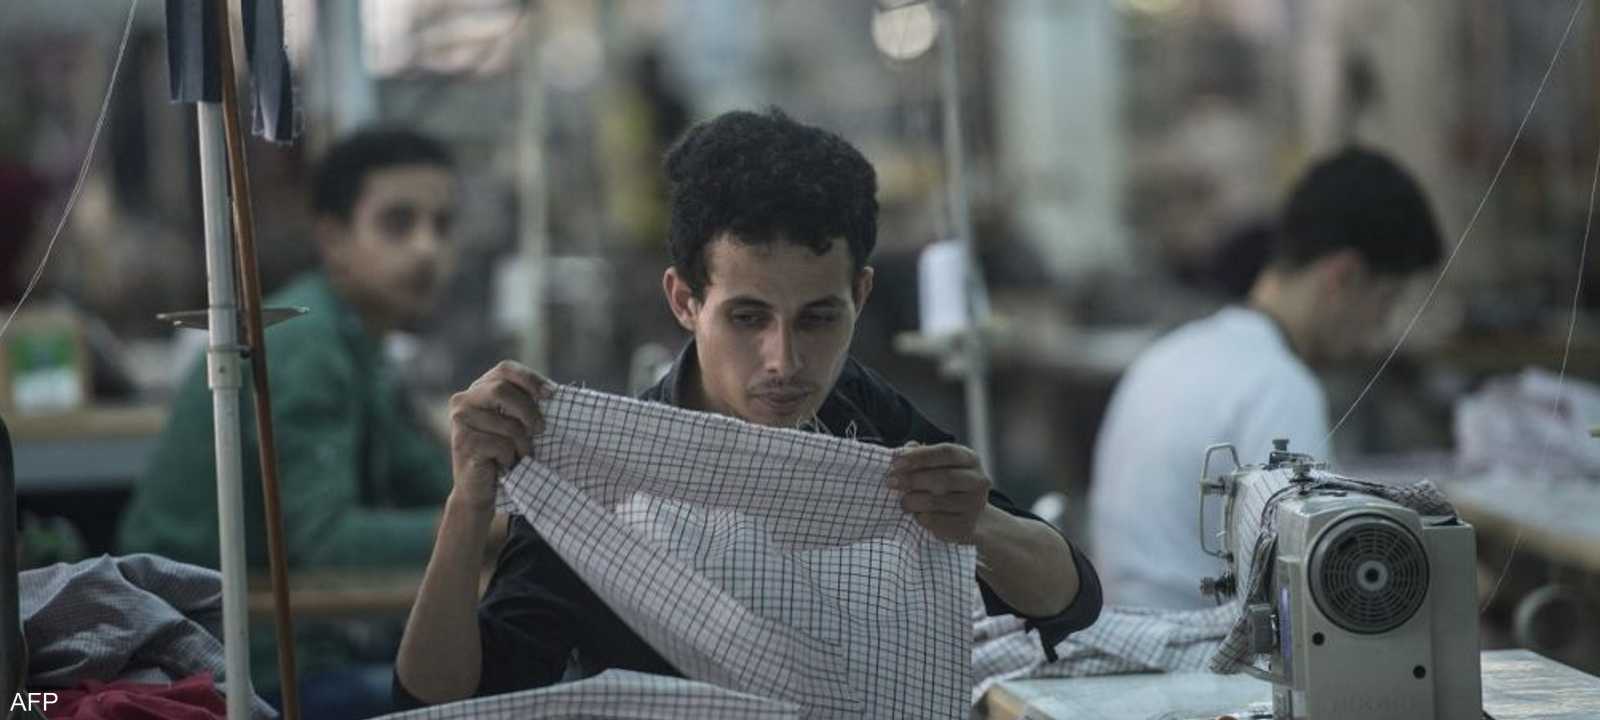 الصناعات المصرية تزدهر في مجال الأنسجة والجلود